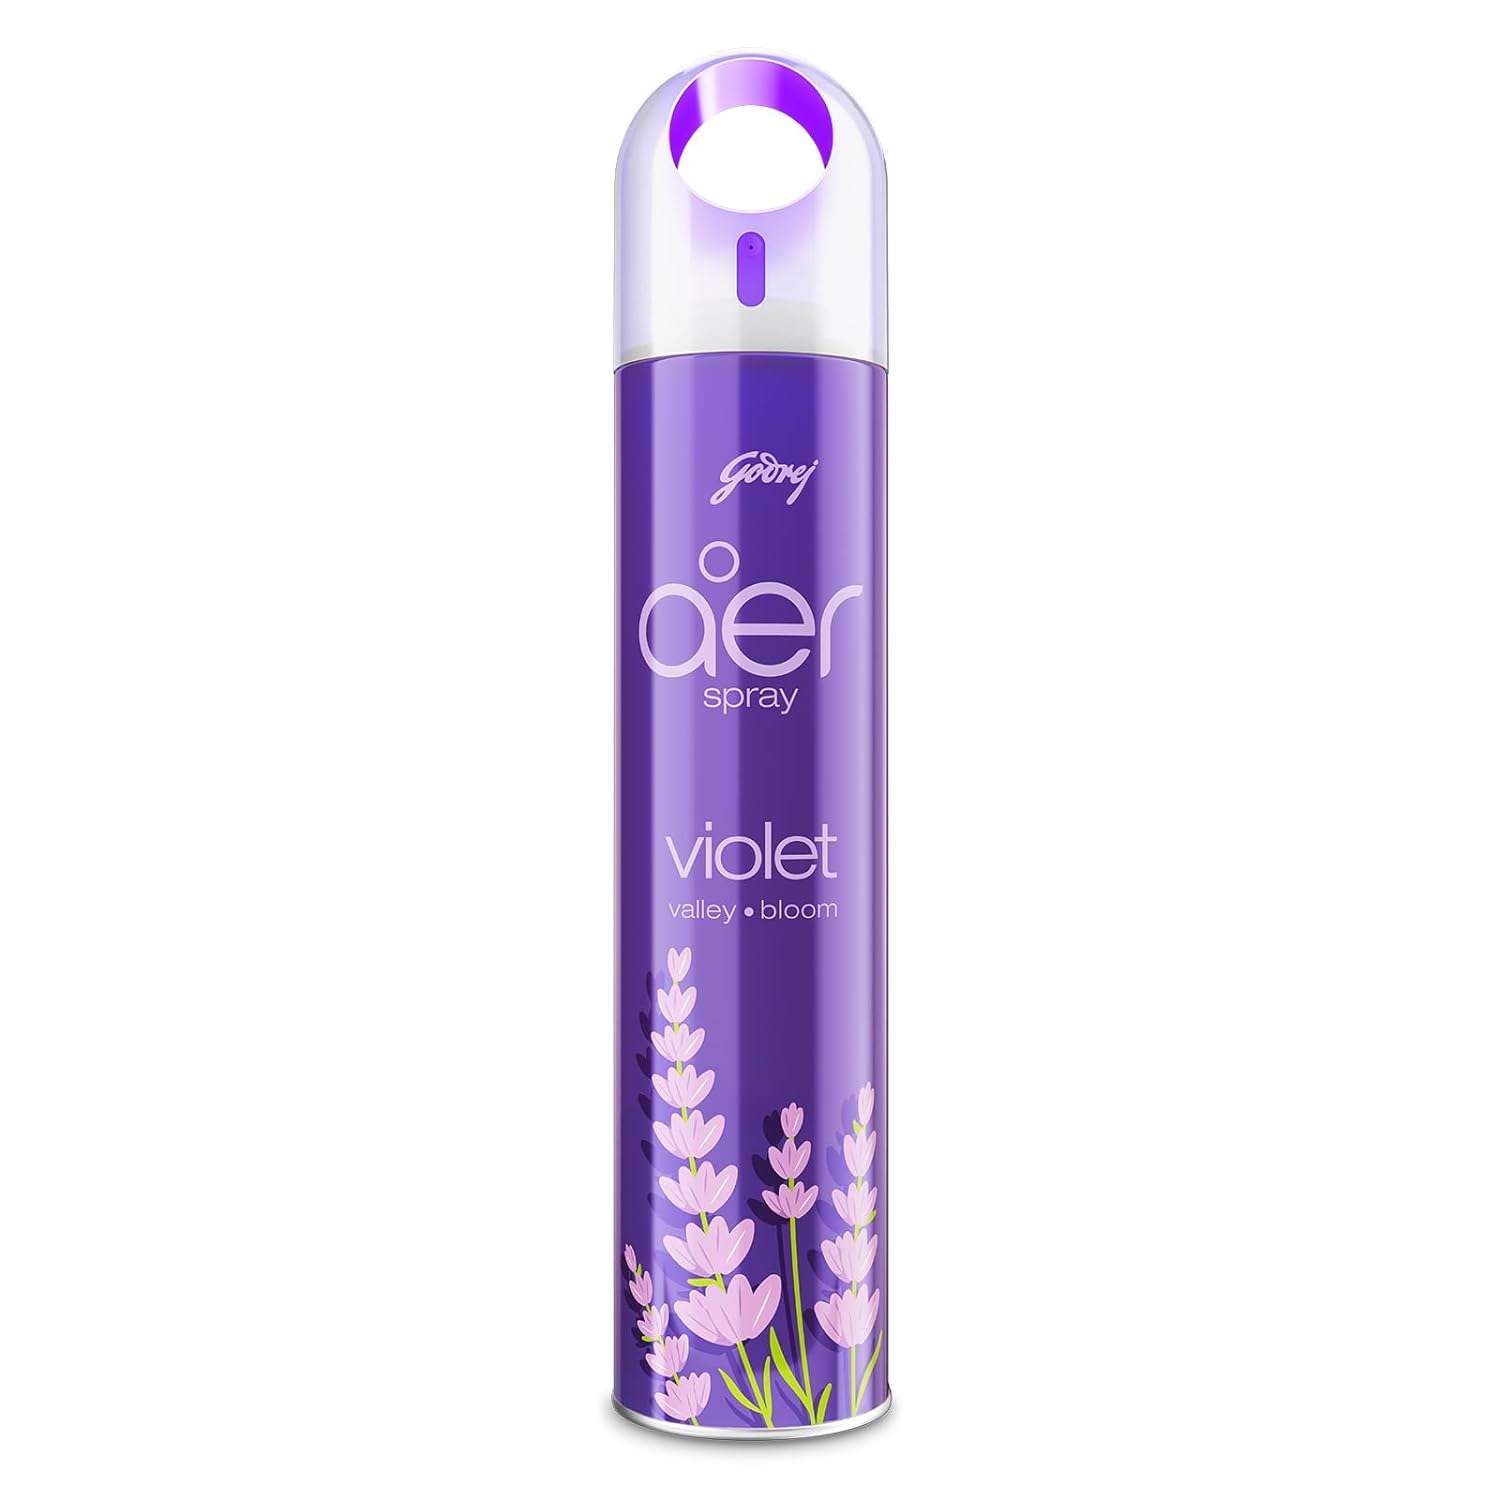 Godrej aer Spray Violet Valley Bloom Home Fragrances